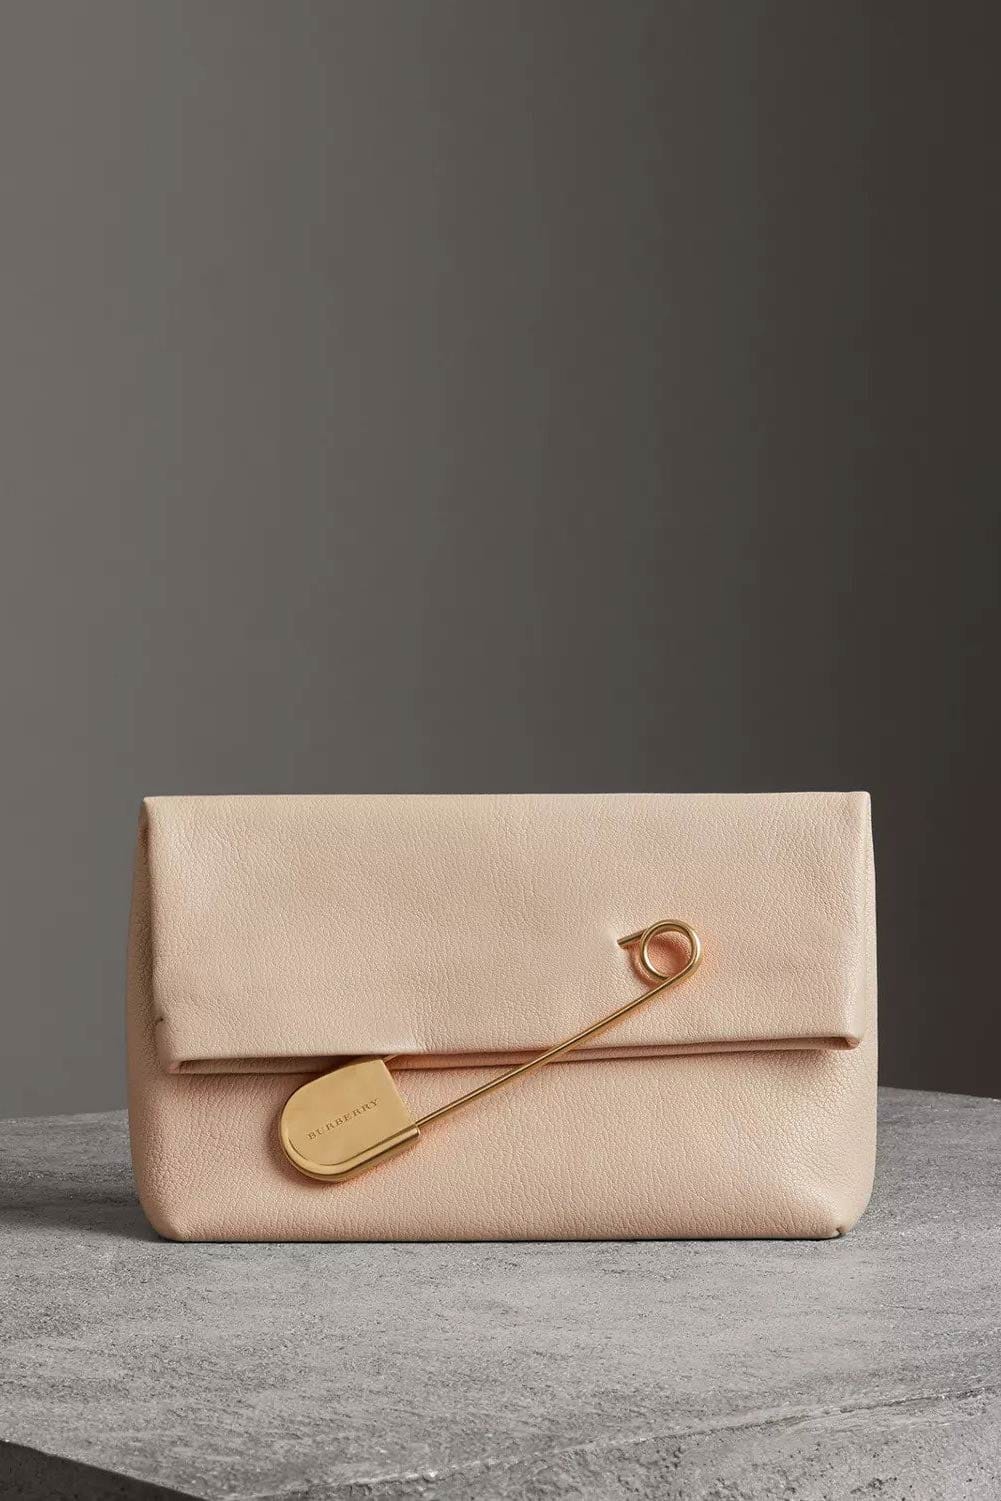 burberry clutch purse